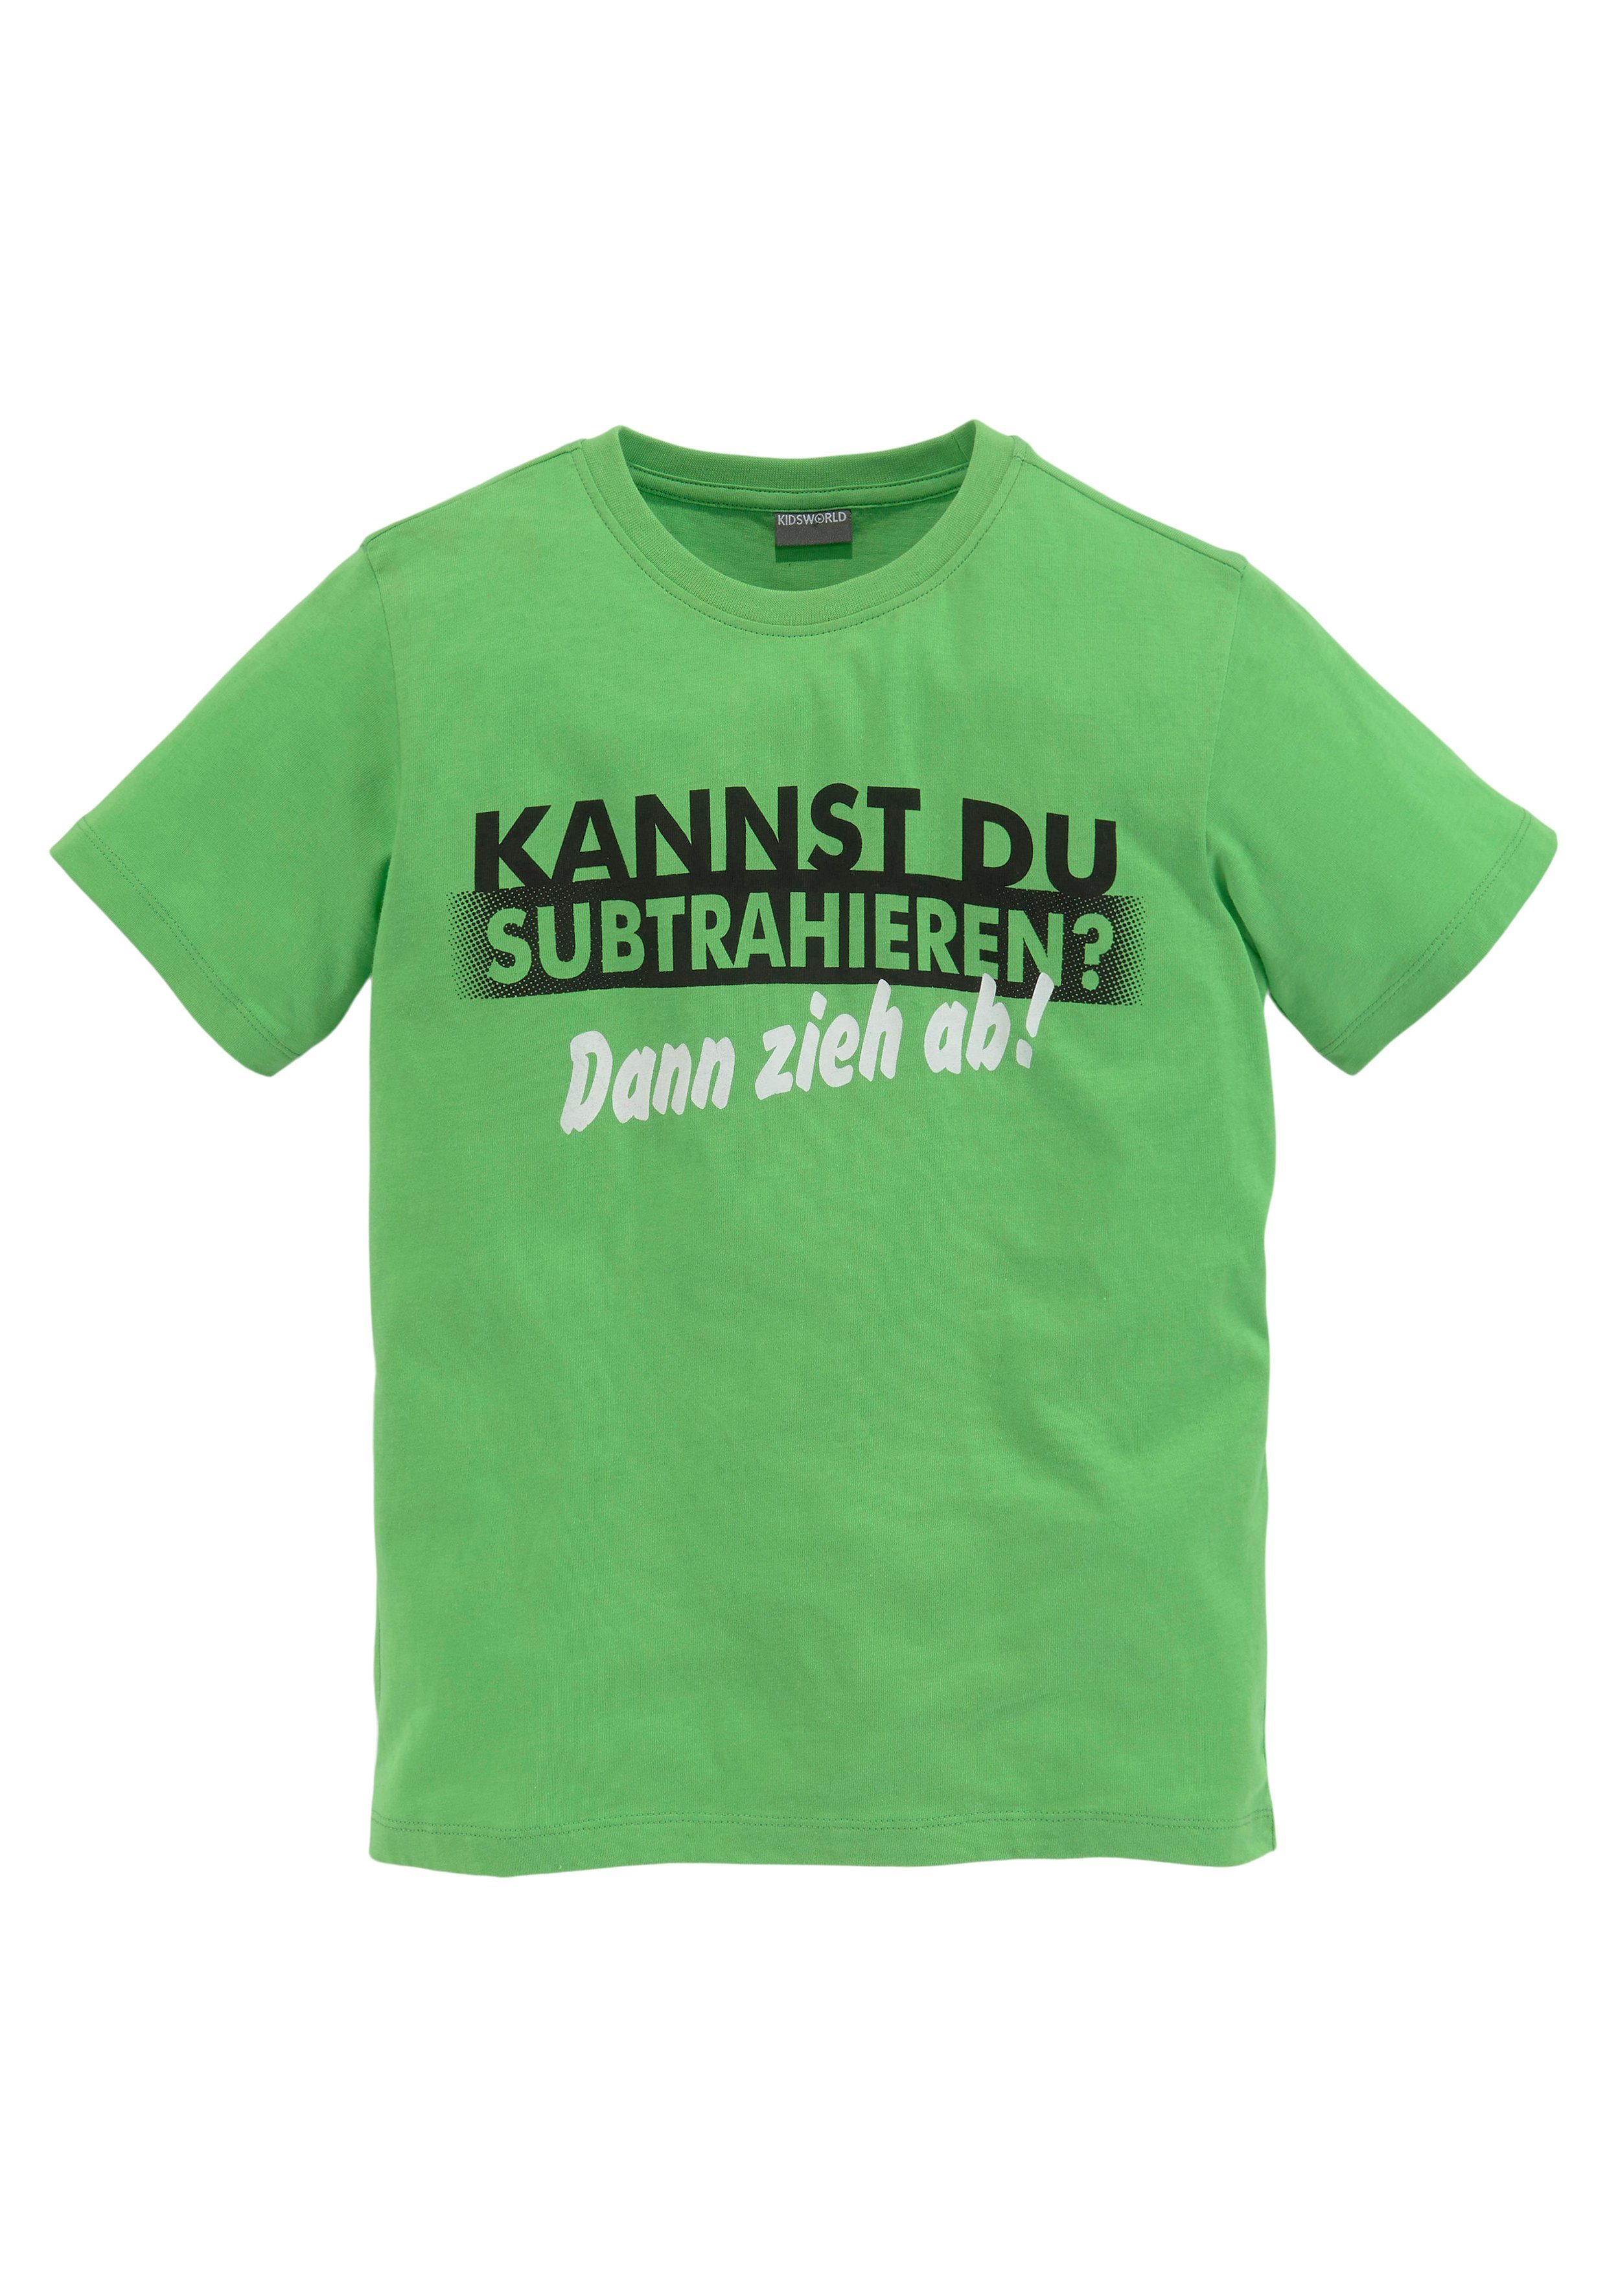 T-Shirt KANNST KIDSWORLD SUBTRAHIEREN?, DU Spruch